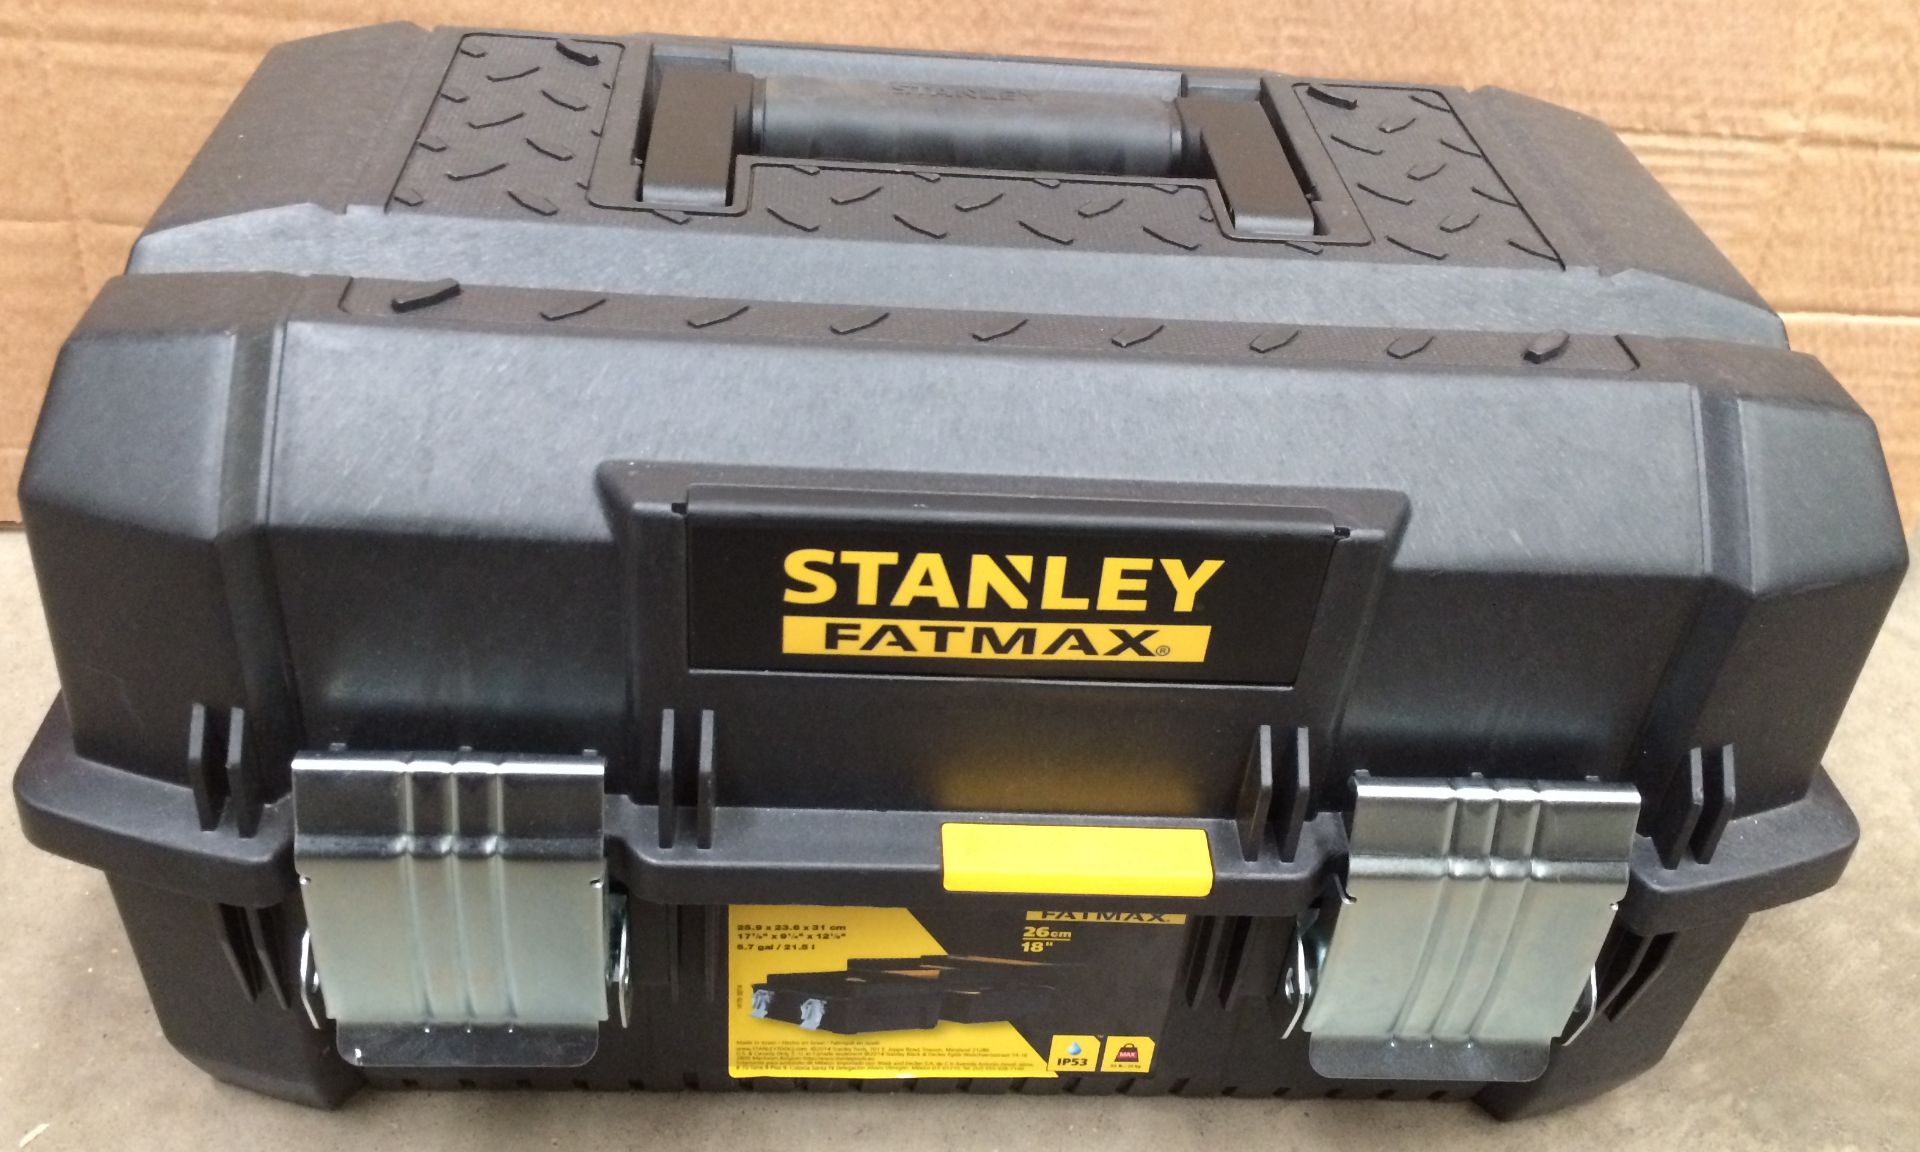 Stanley Fatmax 26cm three level tool box